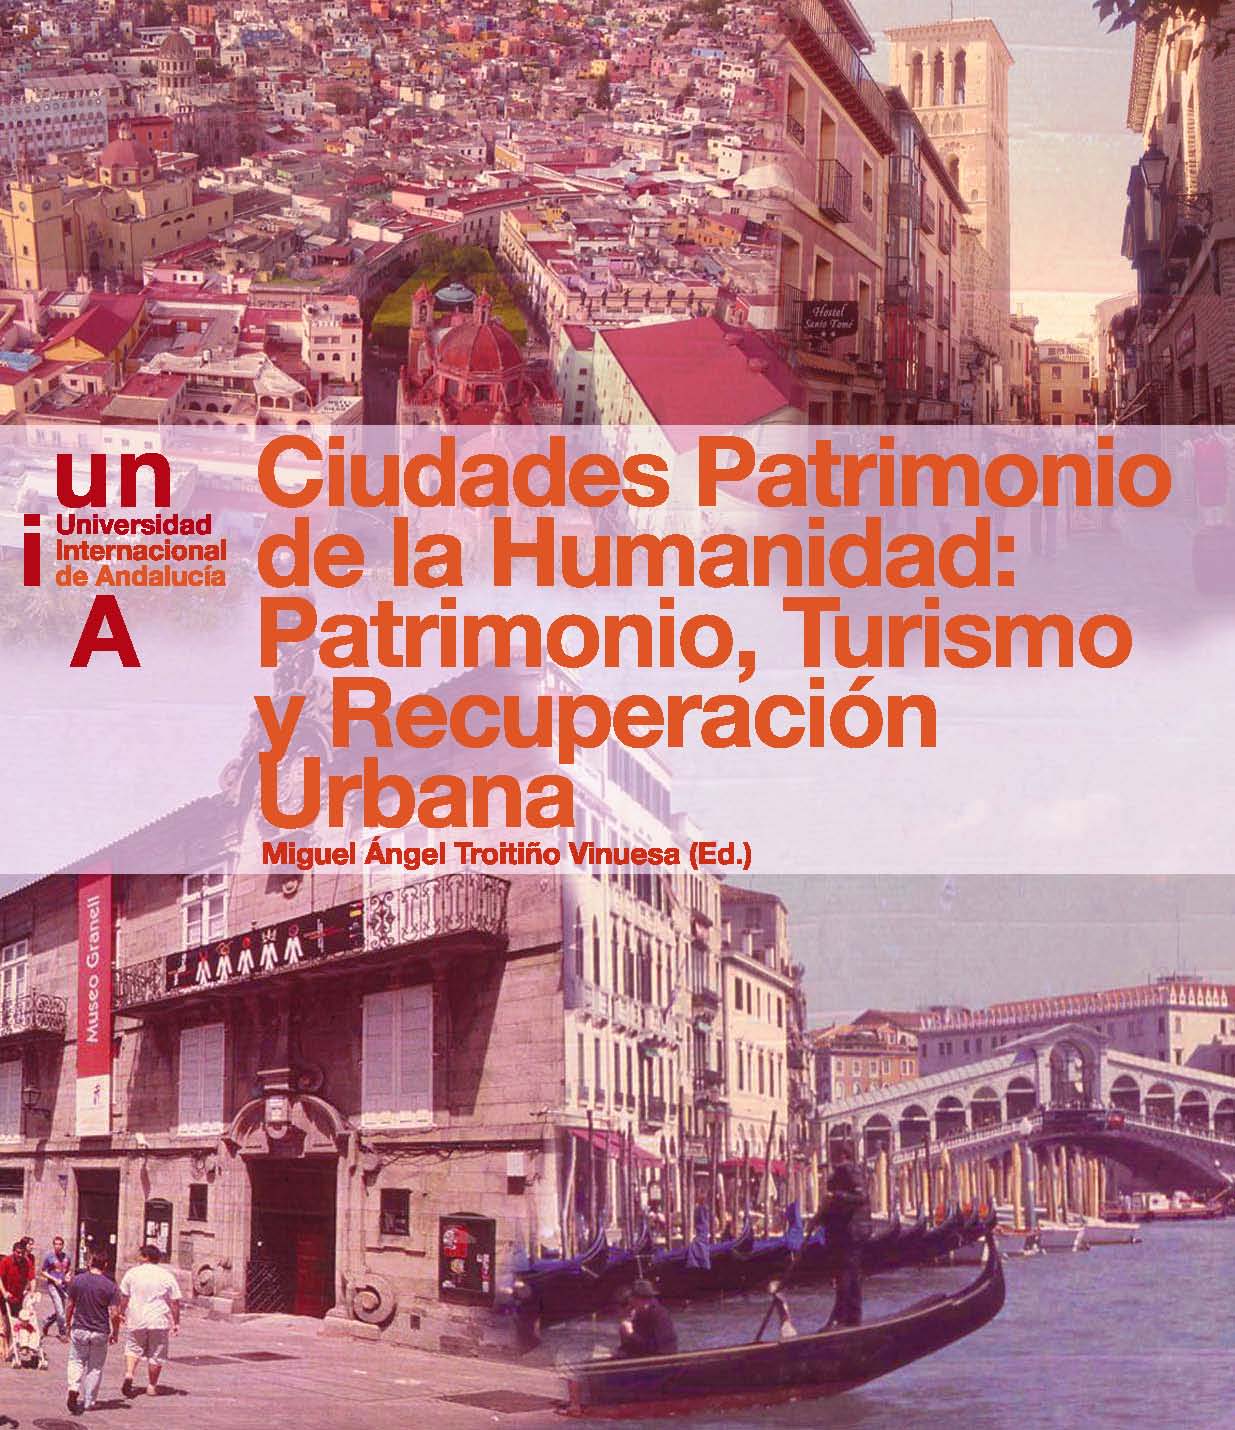 Ilustración de cubierta, cuatro imágenes con vistas de distintas ciudades: Toledo, Venecia, Guanajuato (México) y Santiago de Compostela.